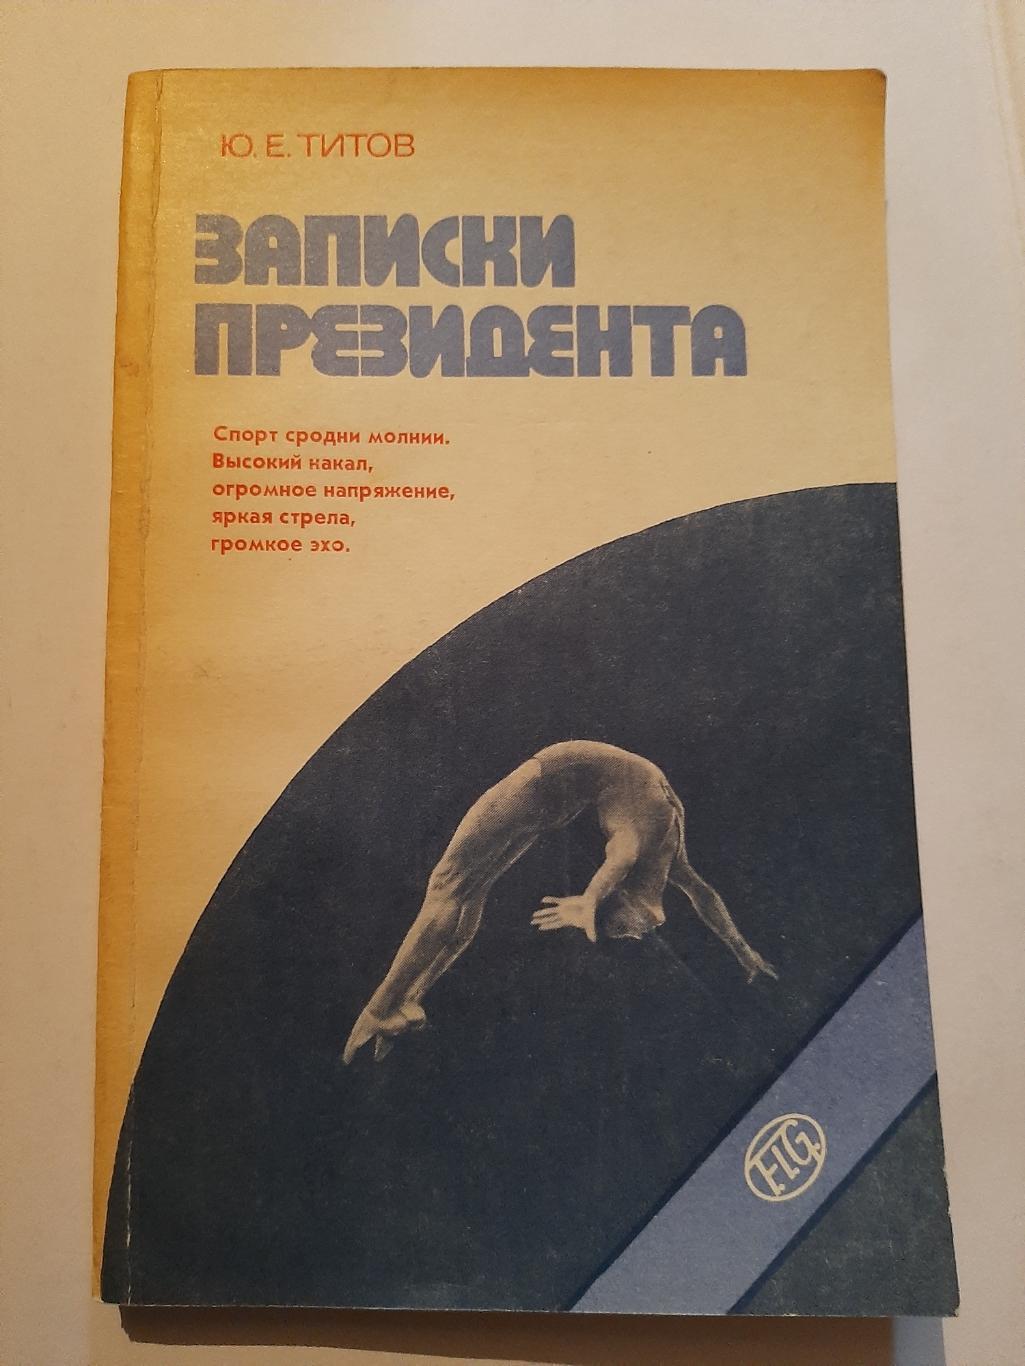 Записки президента Ю. Титов 1983 Советская Россия